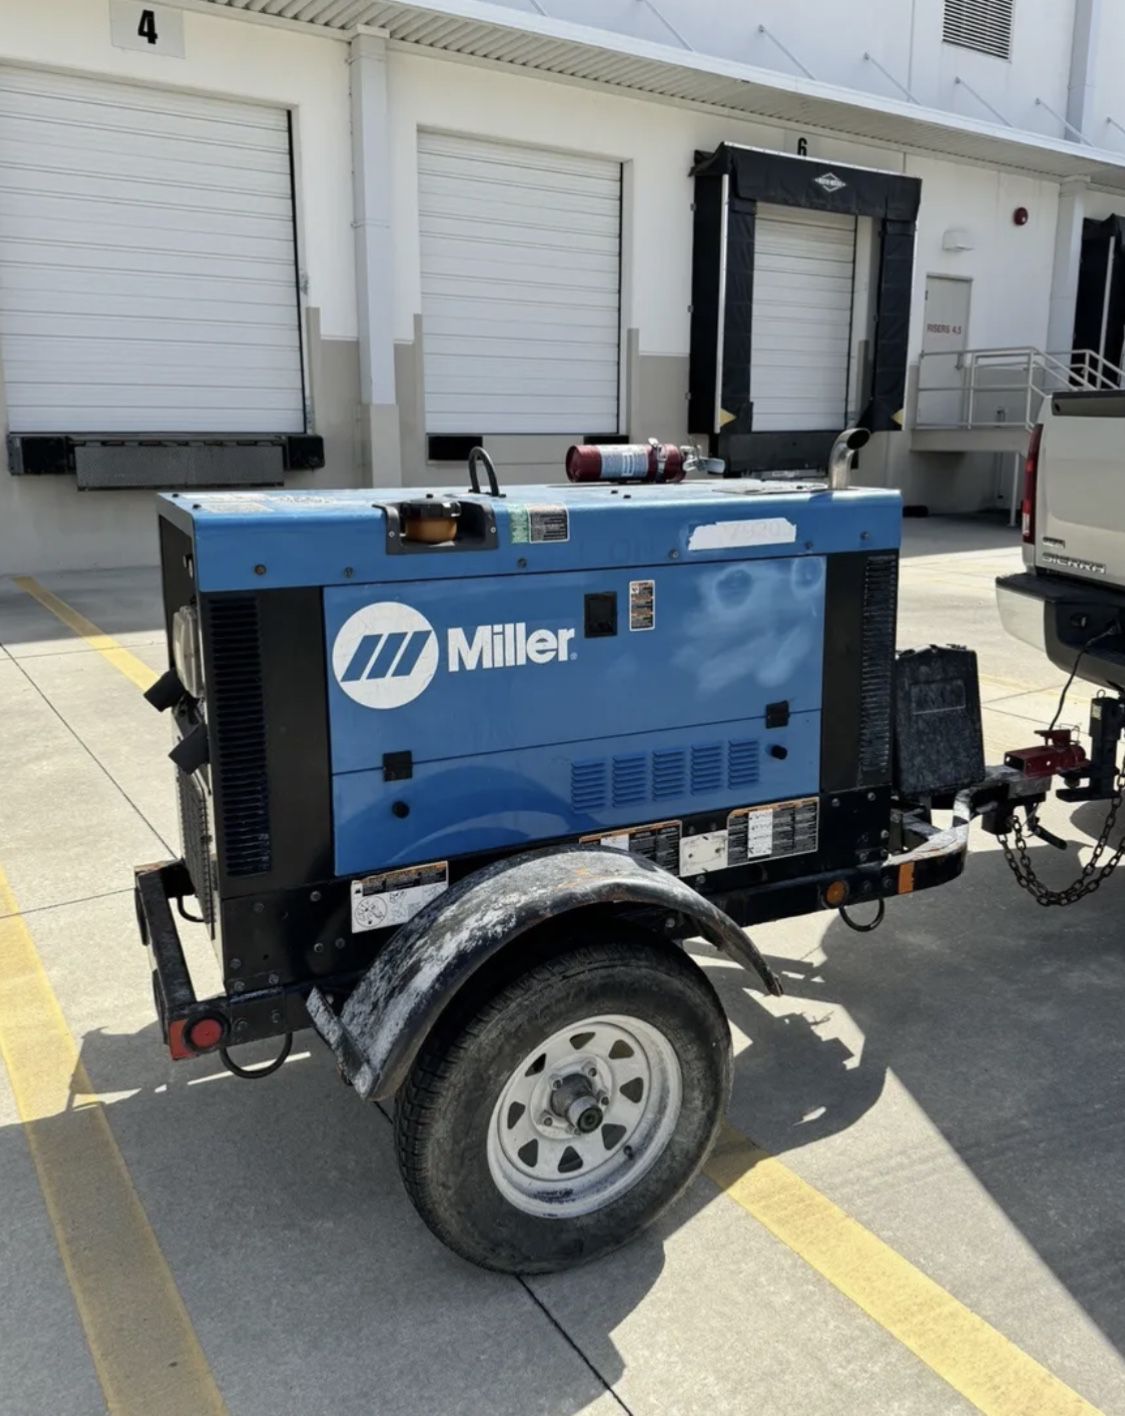 Miller Big Blue 400 Pro Welder/Generator